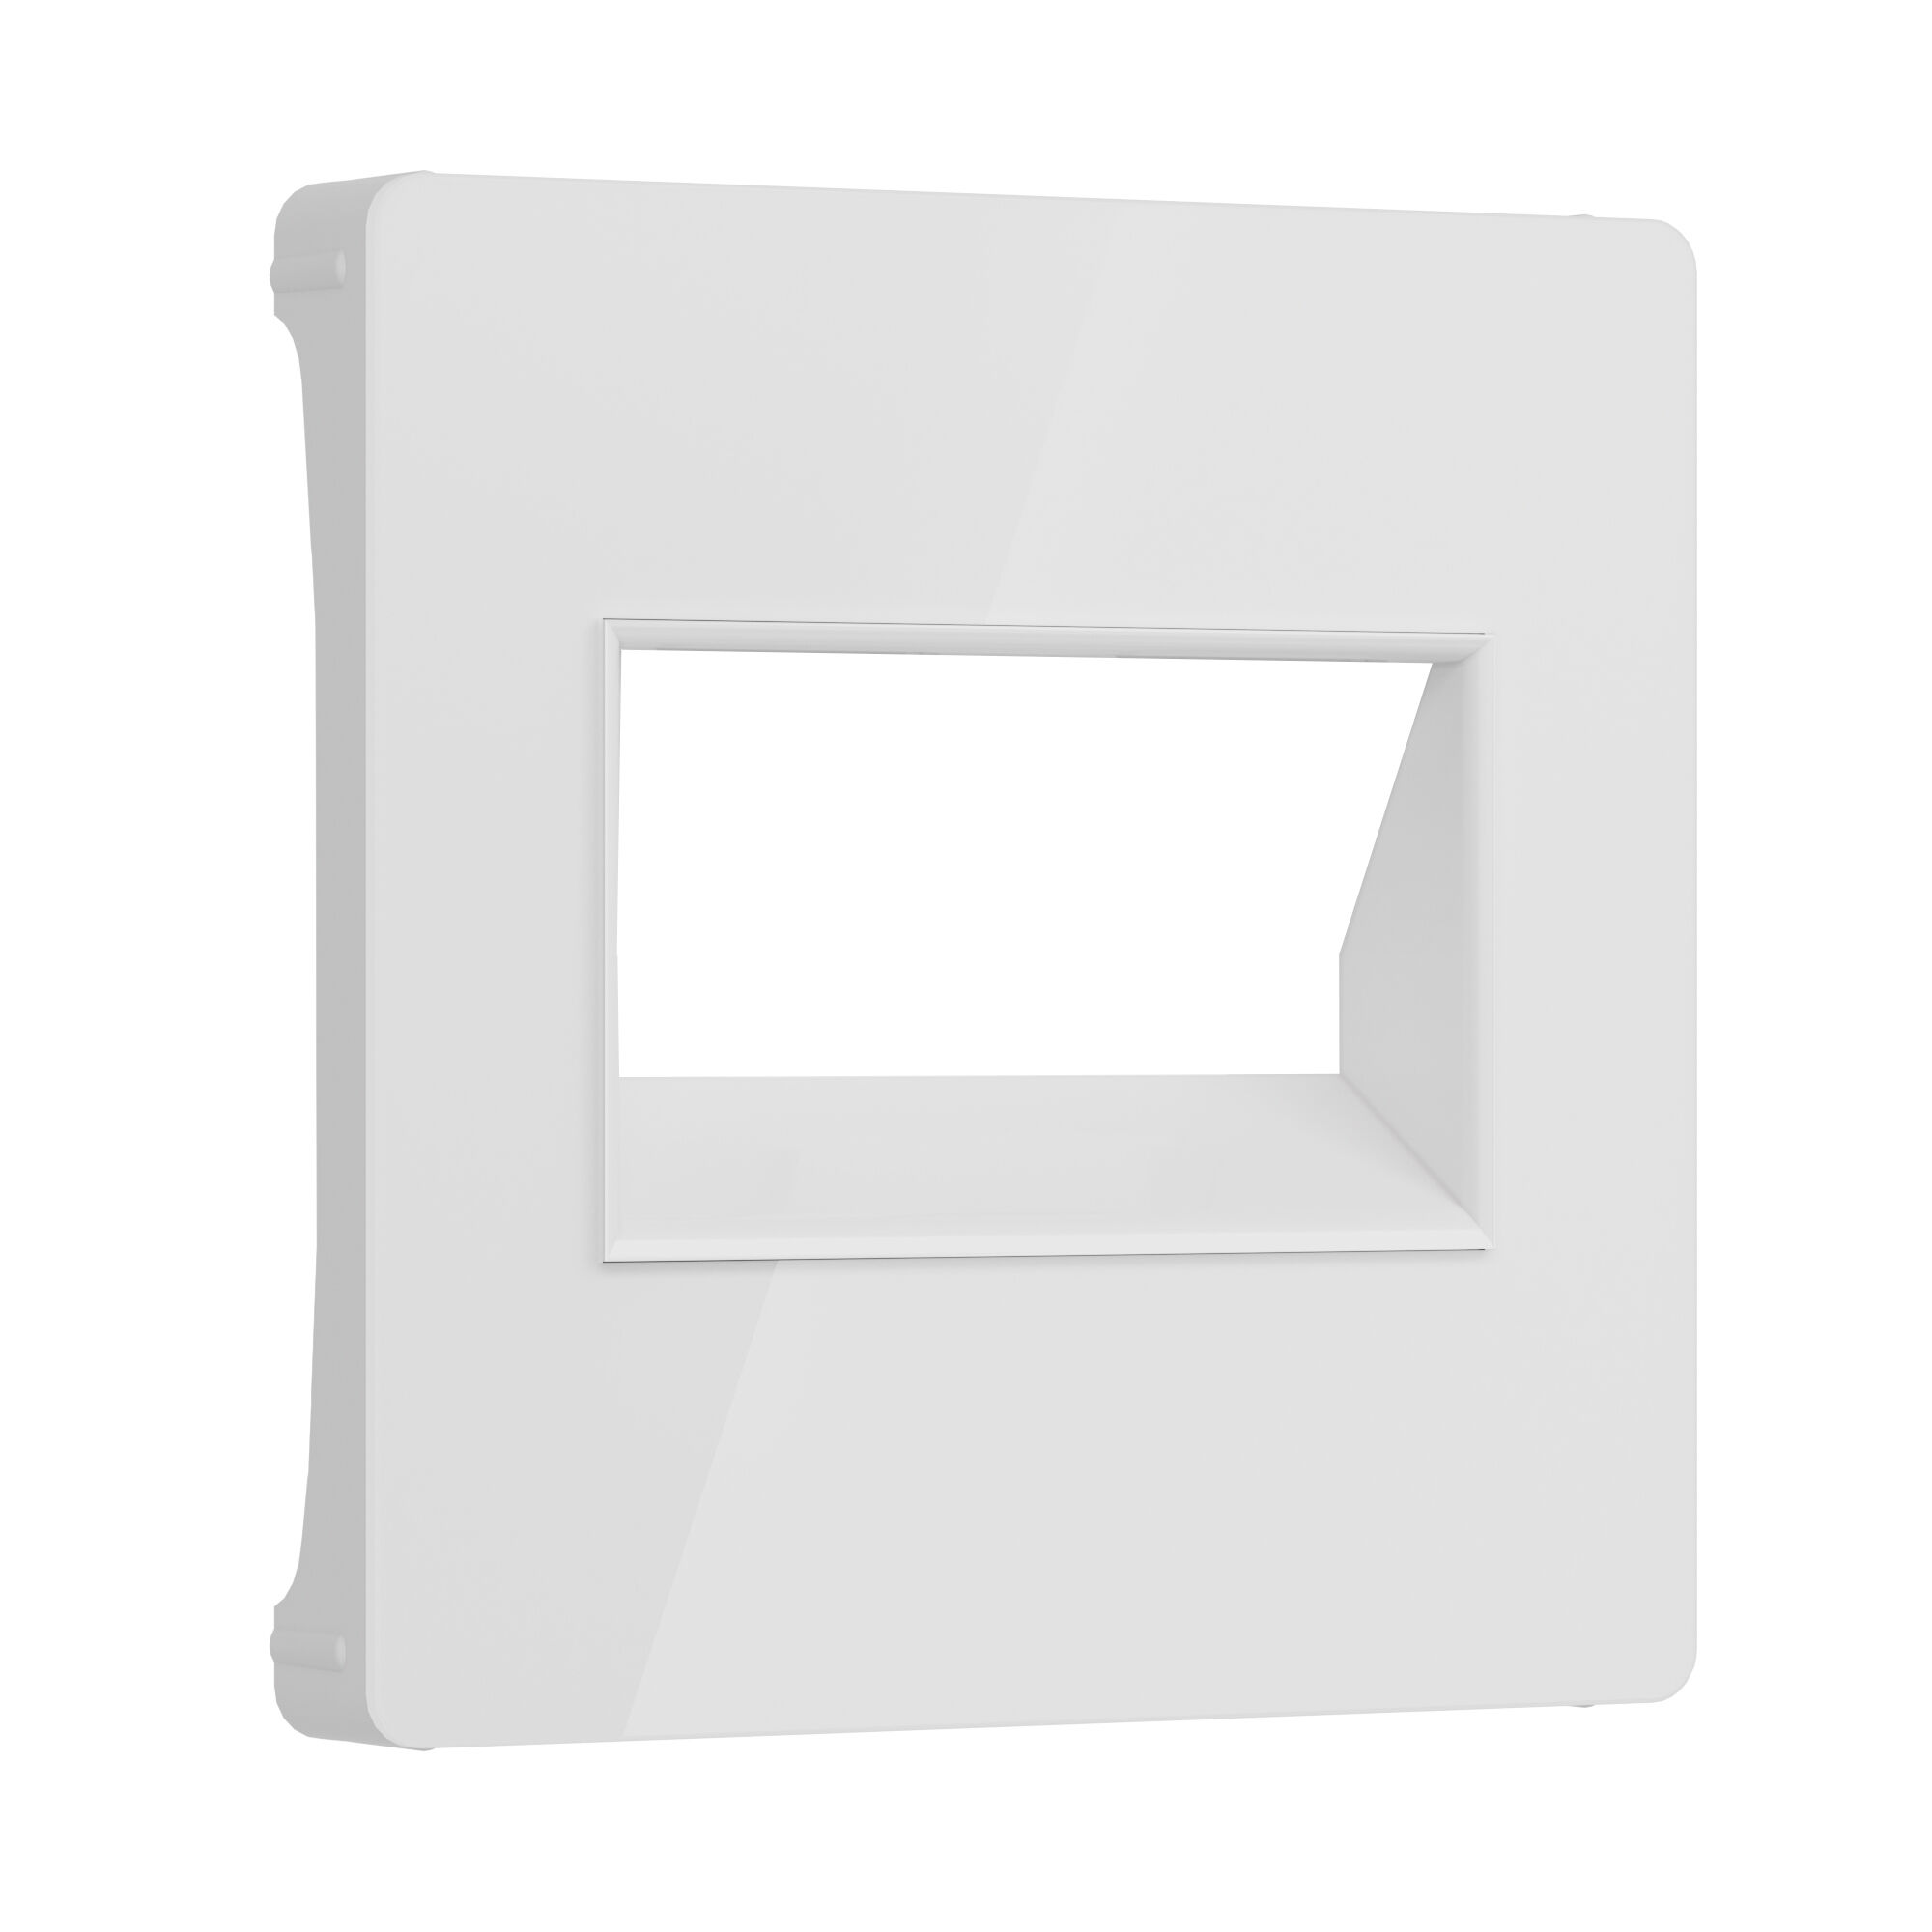 Лицевая панель для розетки интернет RJ-45 Werkel W1191141 4690389197390, цвет белый